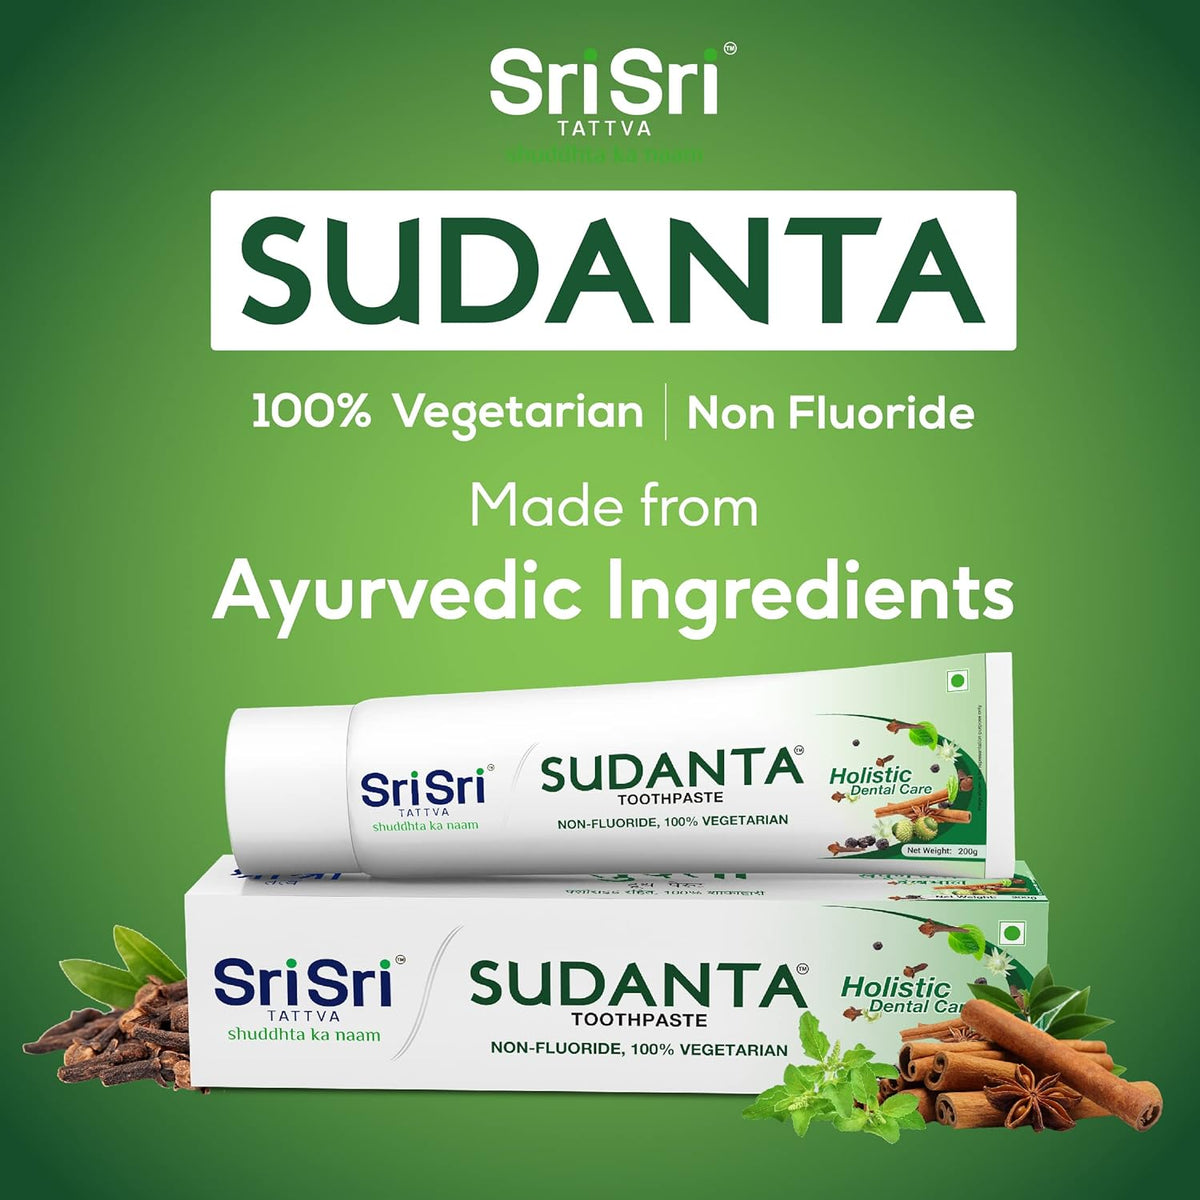 Sri Sri Tattva Sudanta Non-Fluoride & 100% Vegetarian Toothpaste